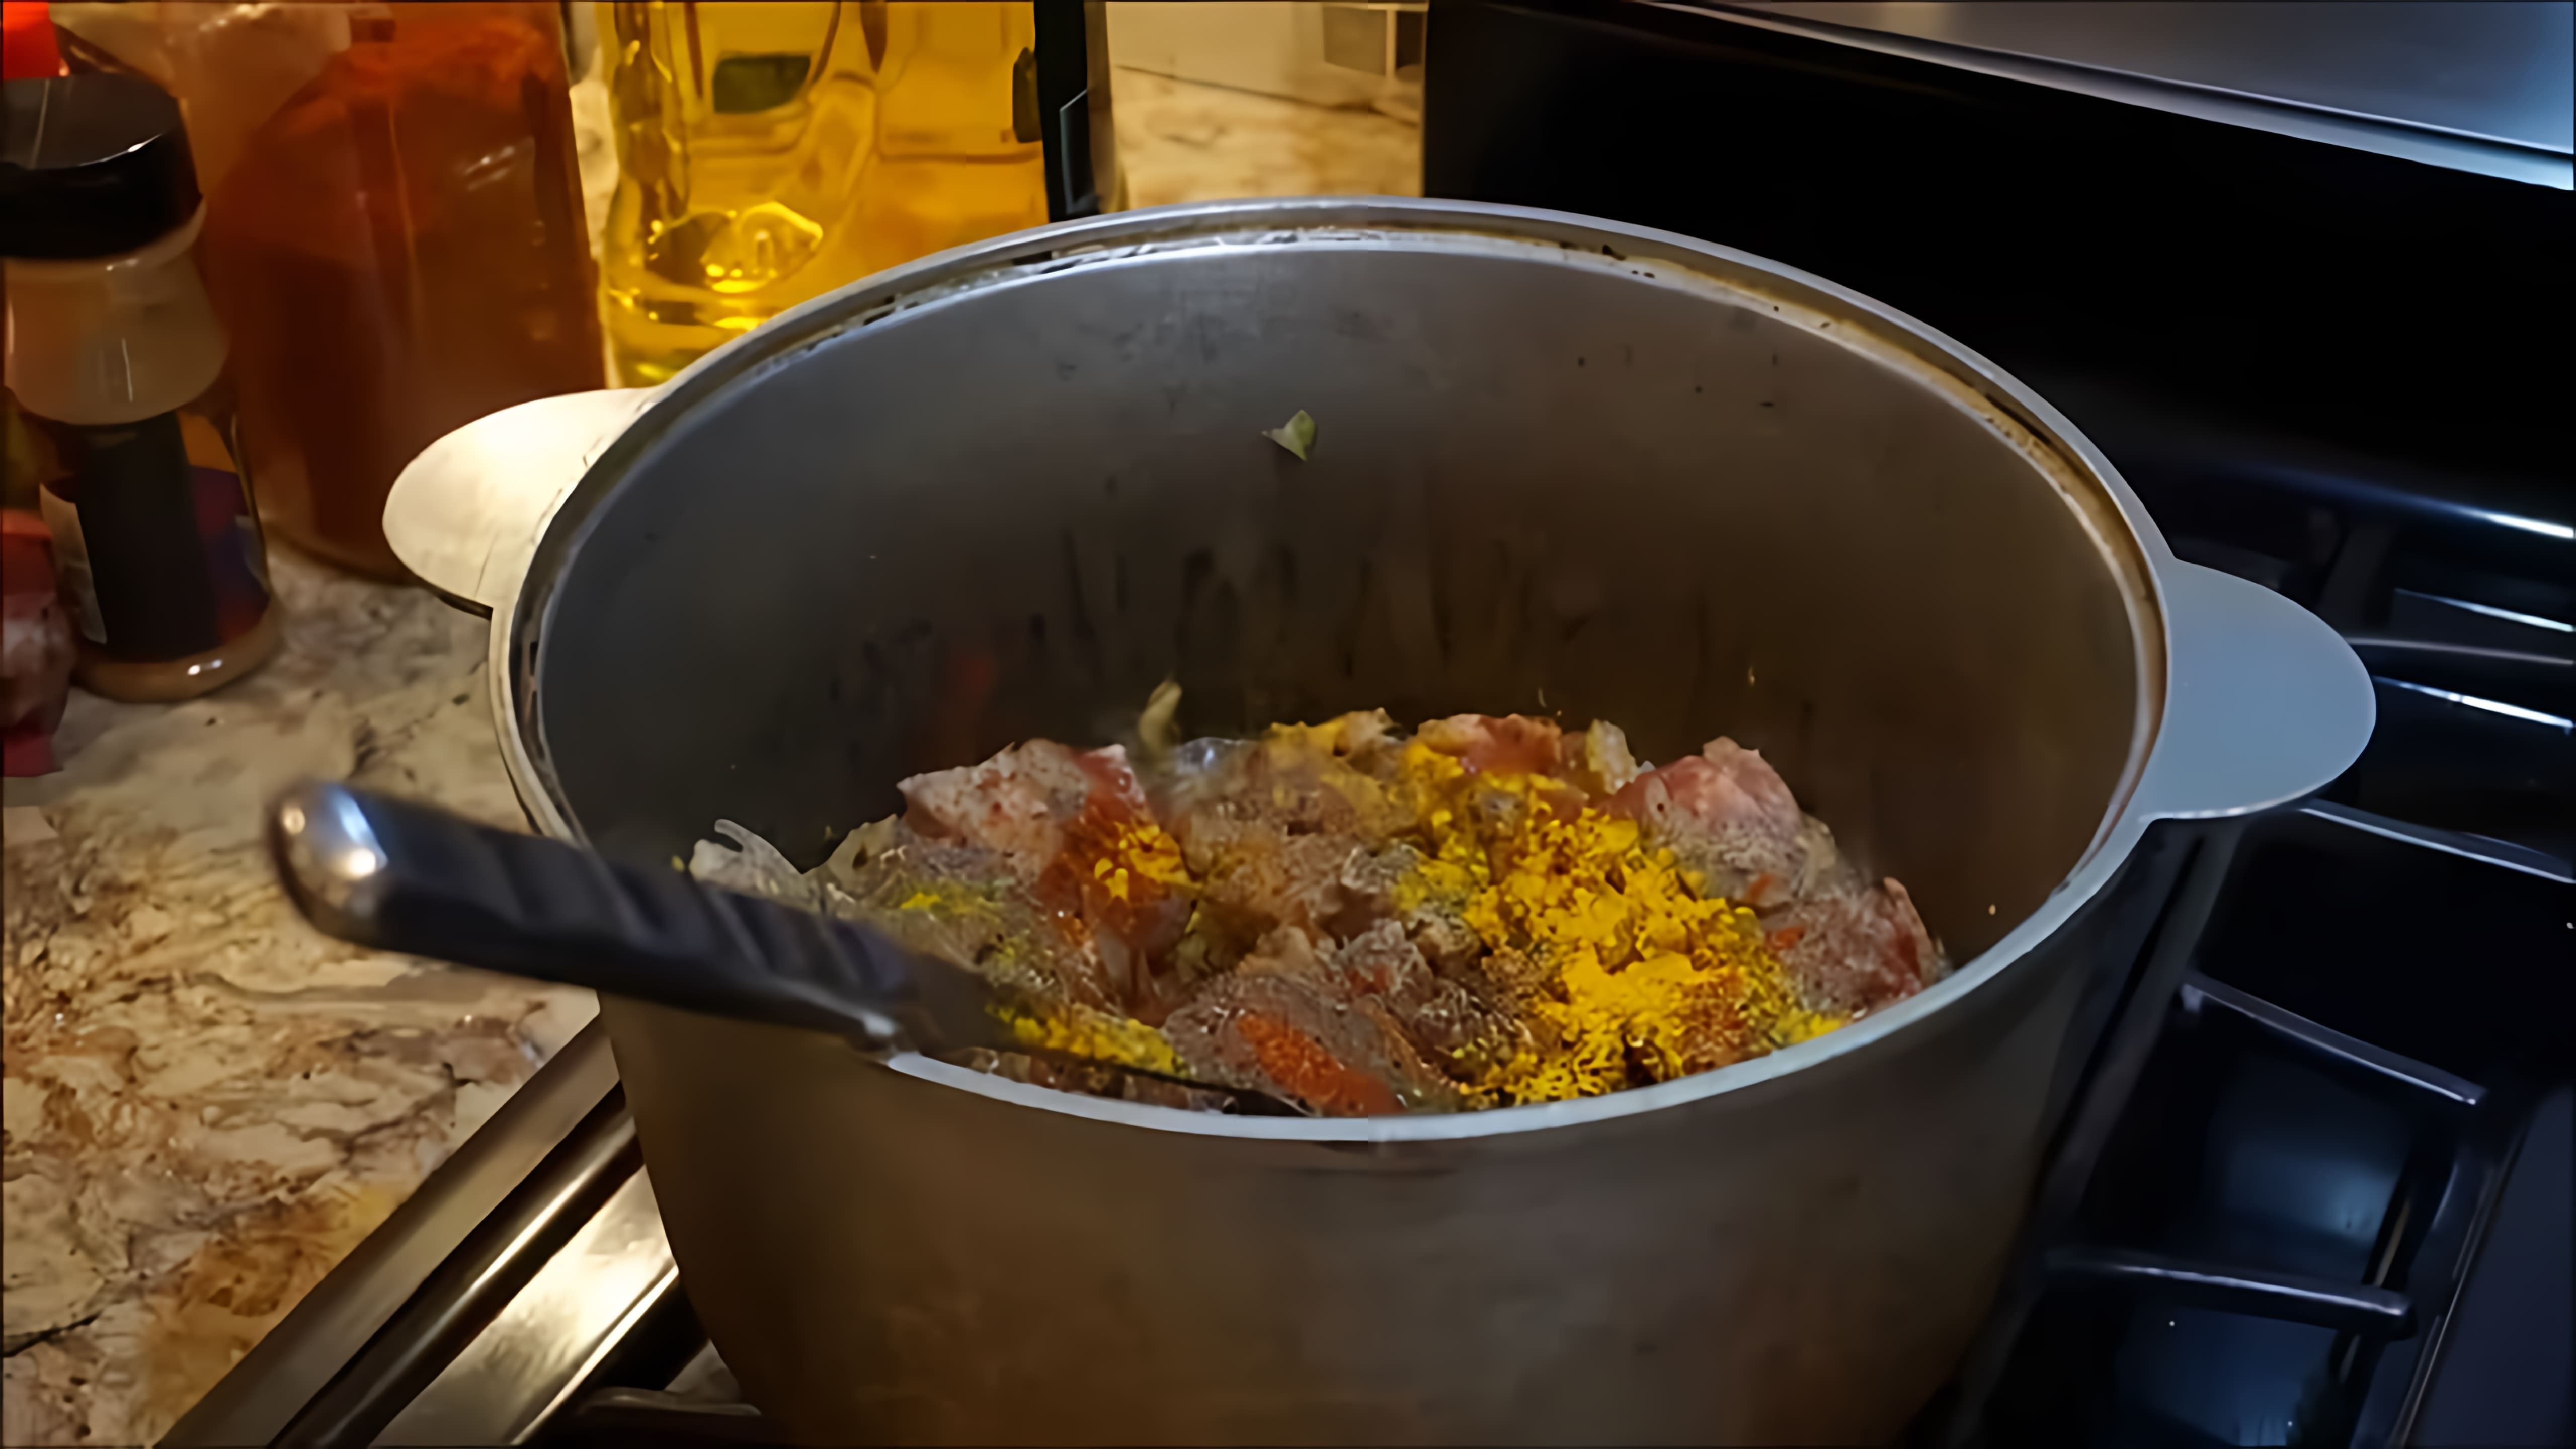 В этом видео демонстрируется процесс приготовления жаркого из свинины в казане